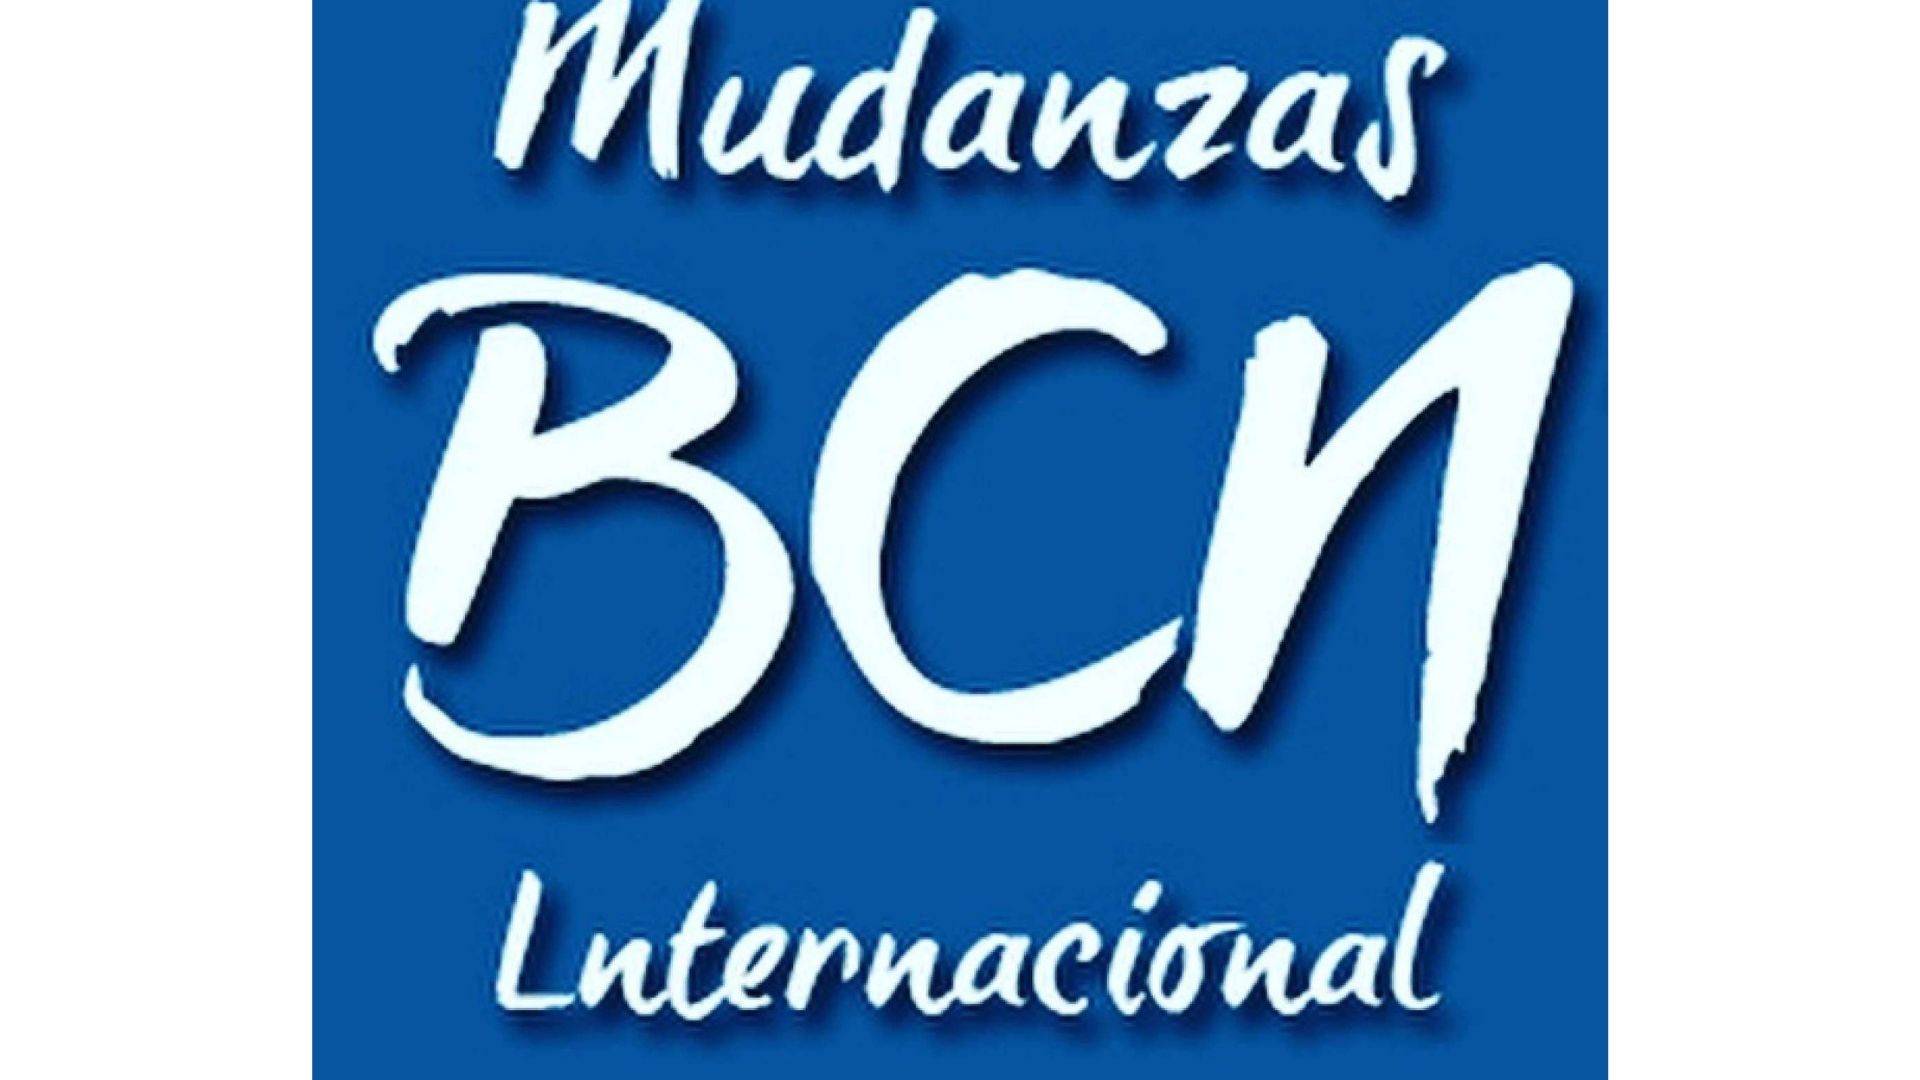 Mudanzas BCN Internacional realiza mudanzas a cualquier lugar del mundo